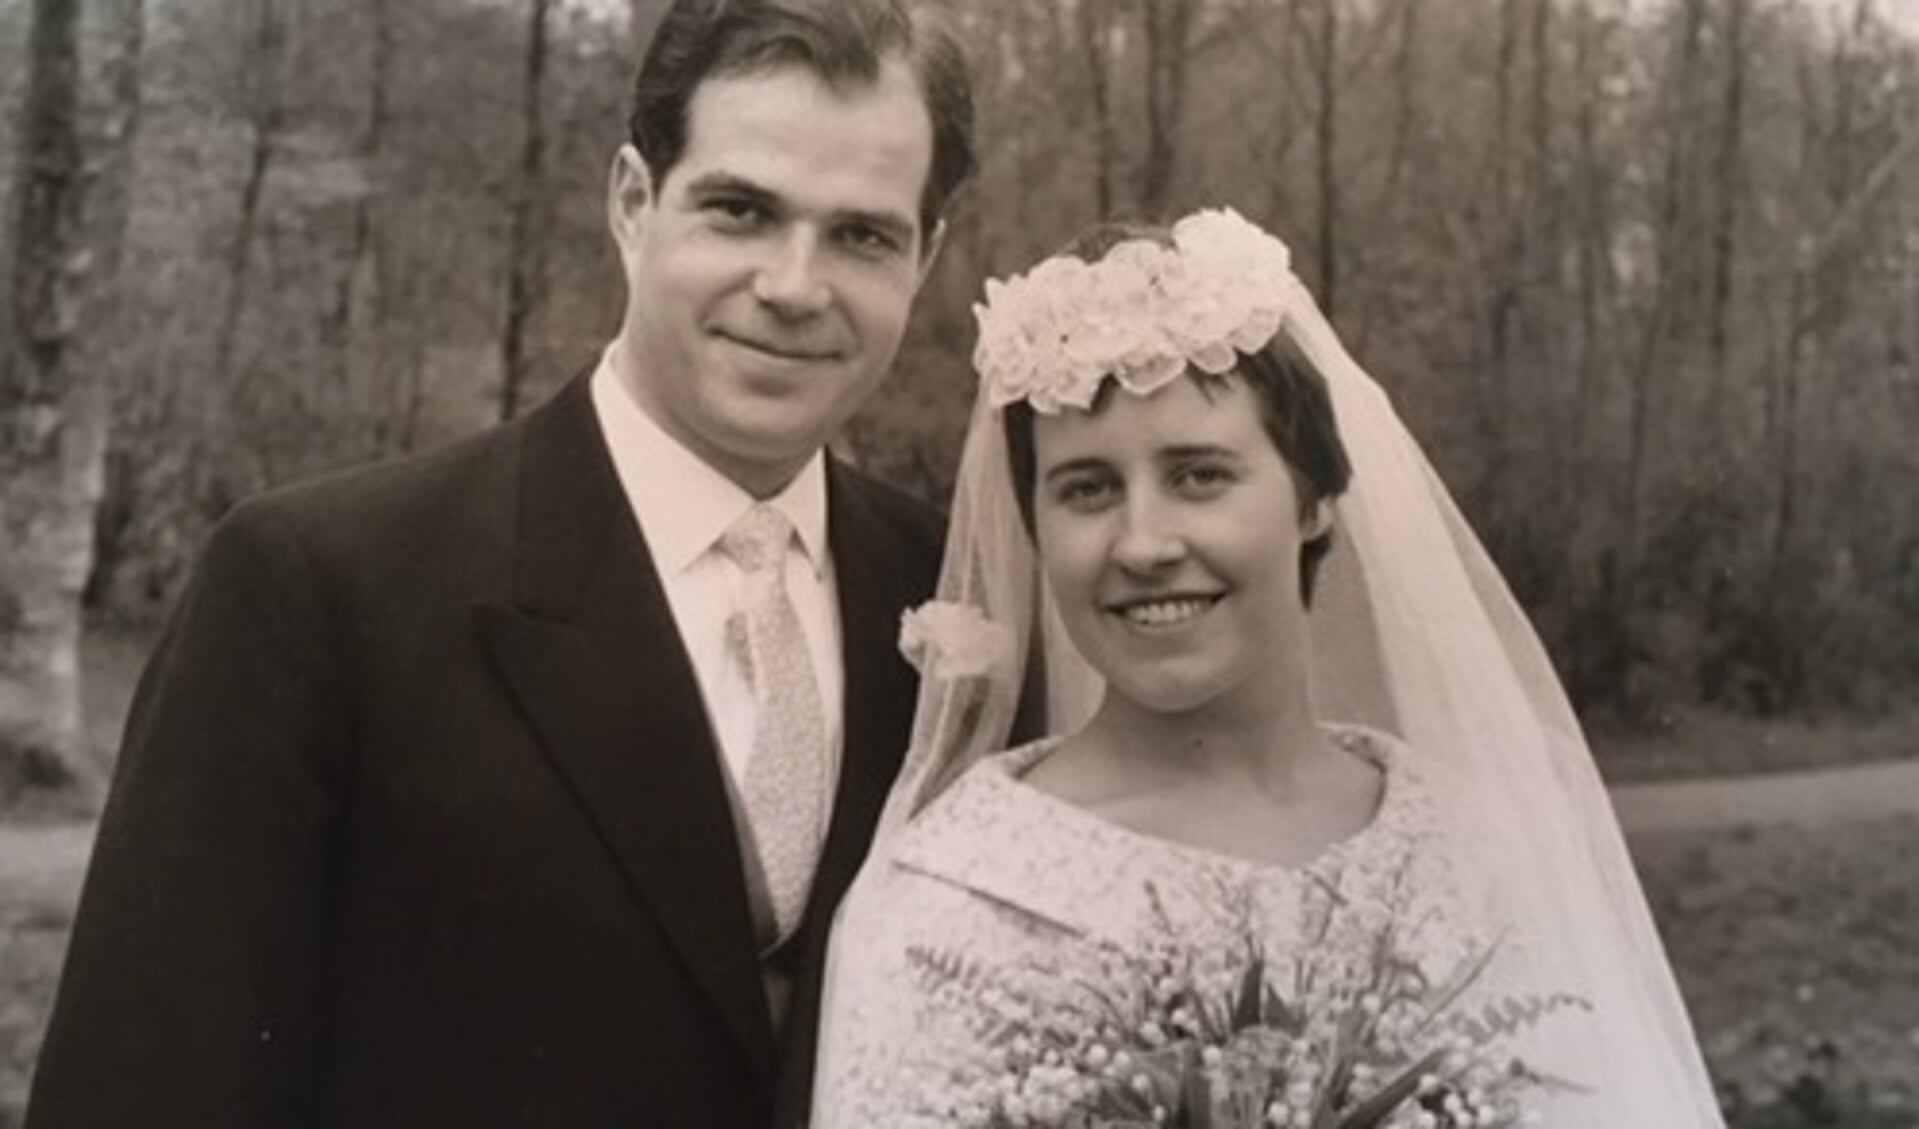 De heer P. Versnel en mevrouw A.M. Versnel-Langedijk zijn donderdag 26 april maar liefst zestig jaar getrouwd. (Foto: aangeleverd)